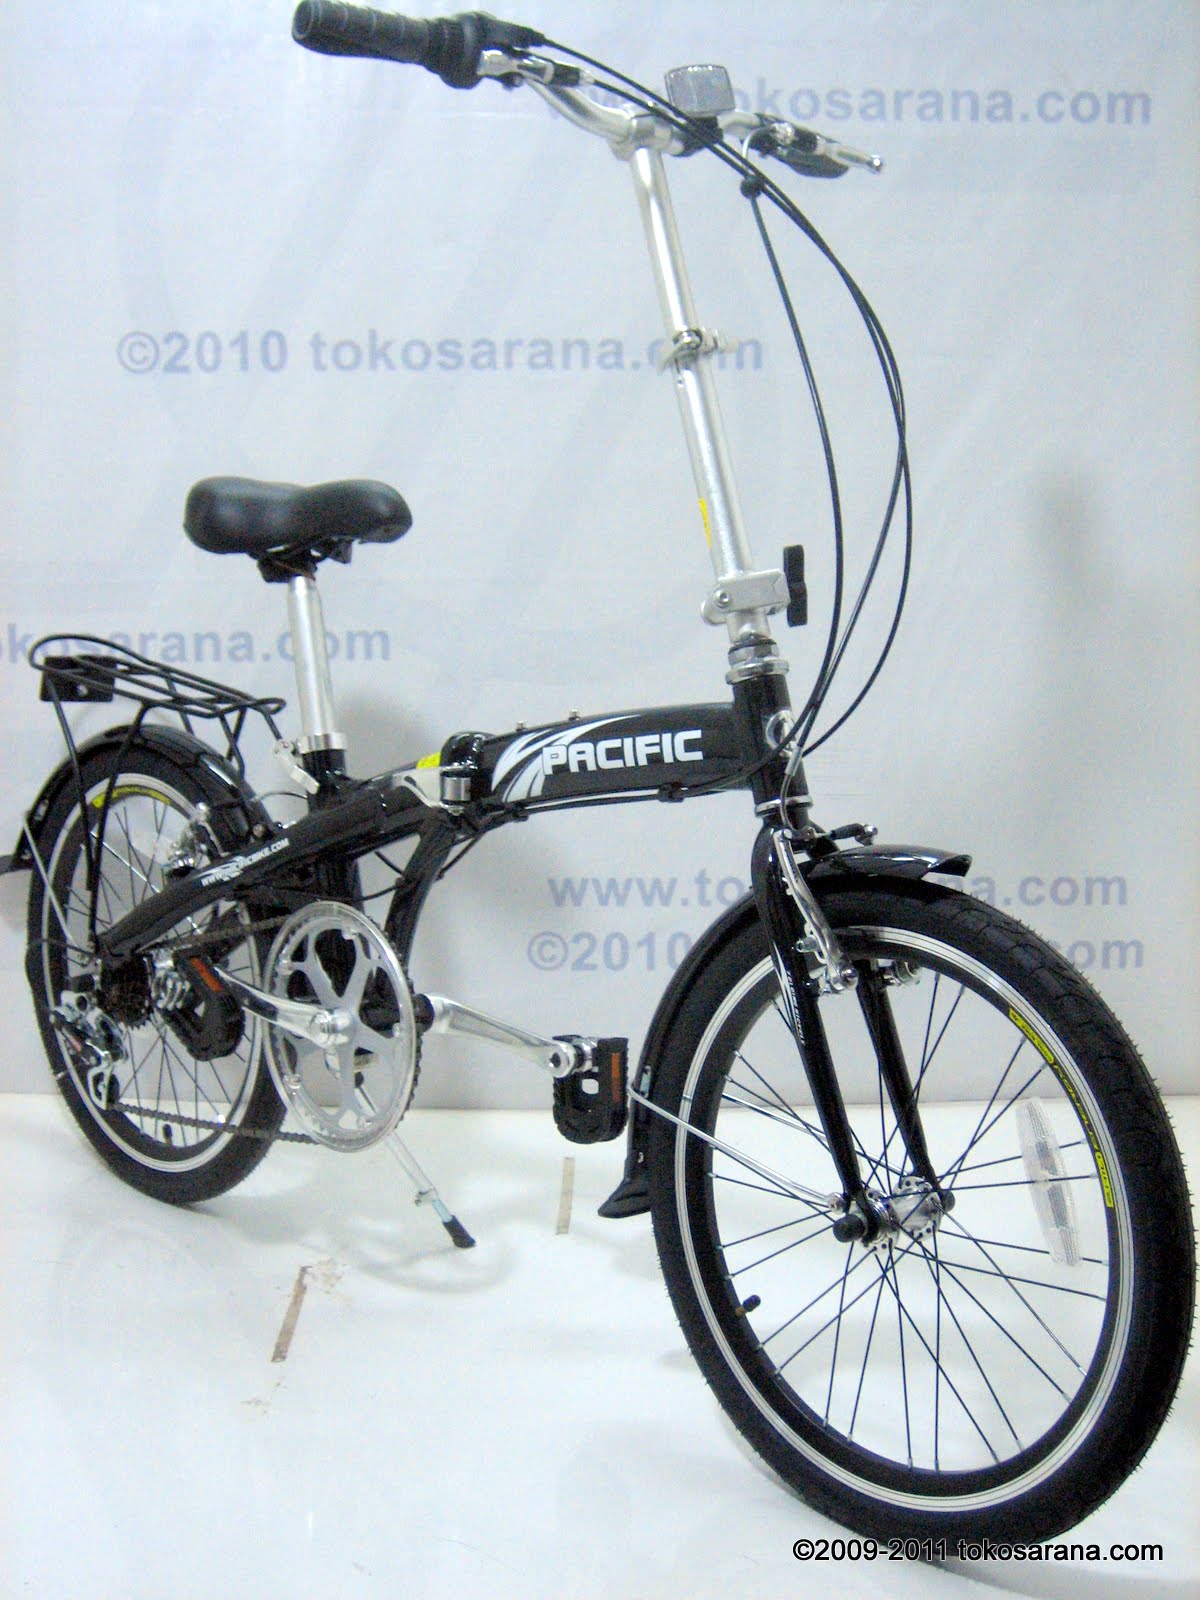 BINTANG HARAPAN: Sepeda Lipat Pacific Alloy Frame 20 Inci